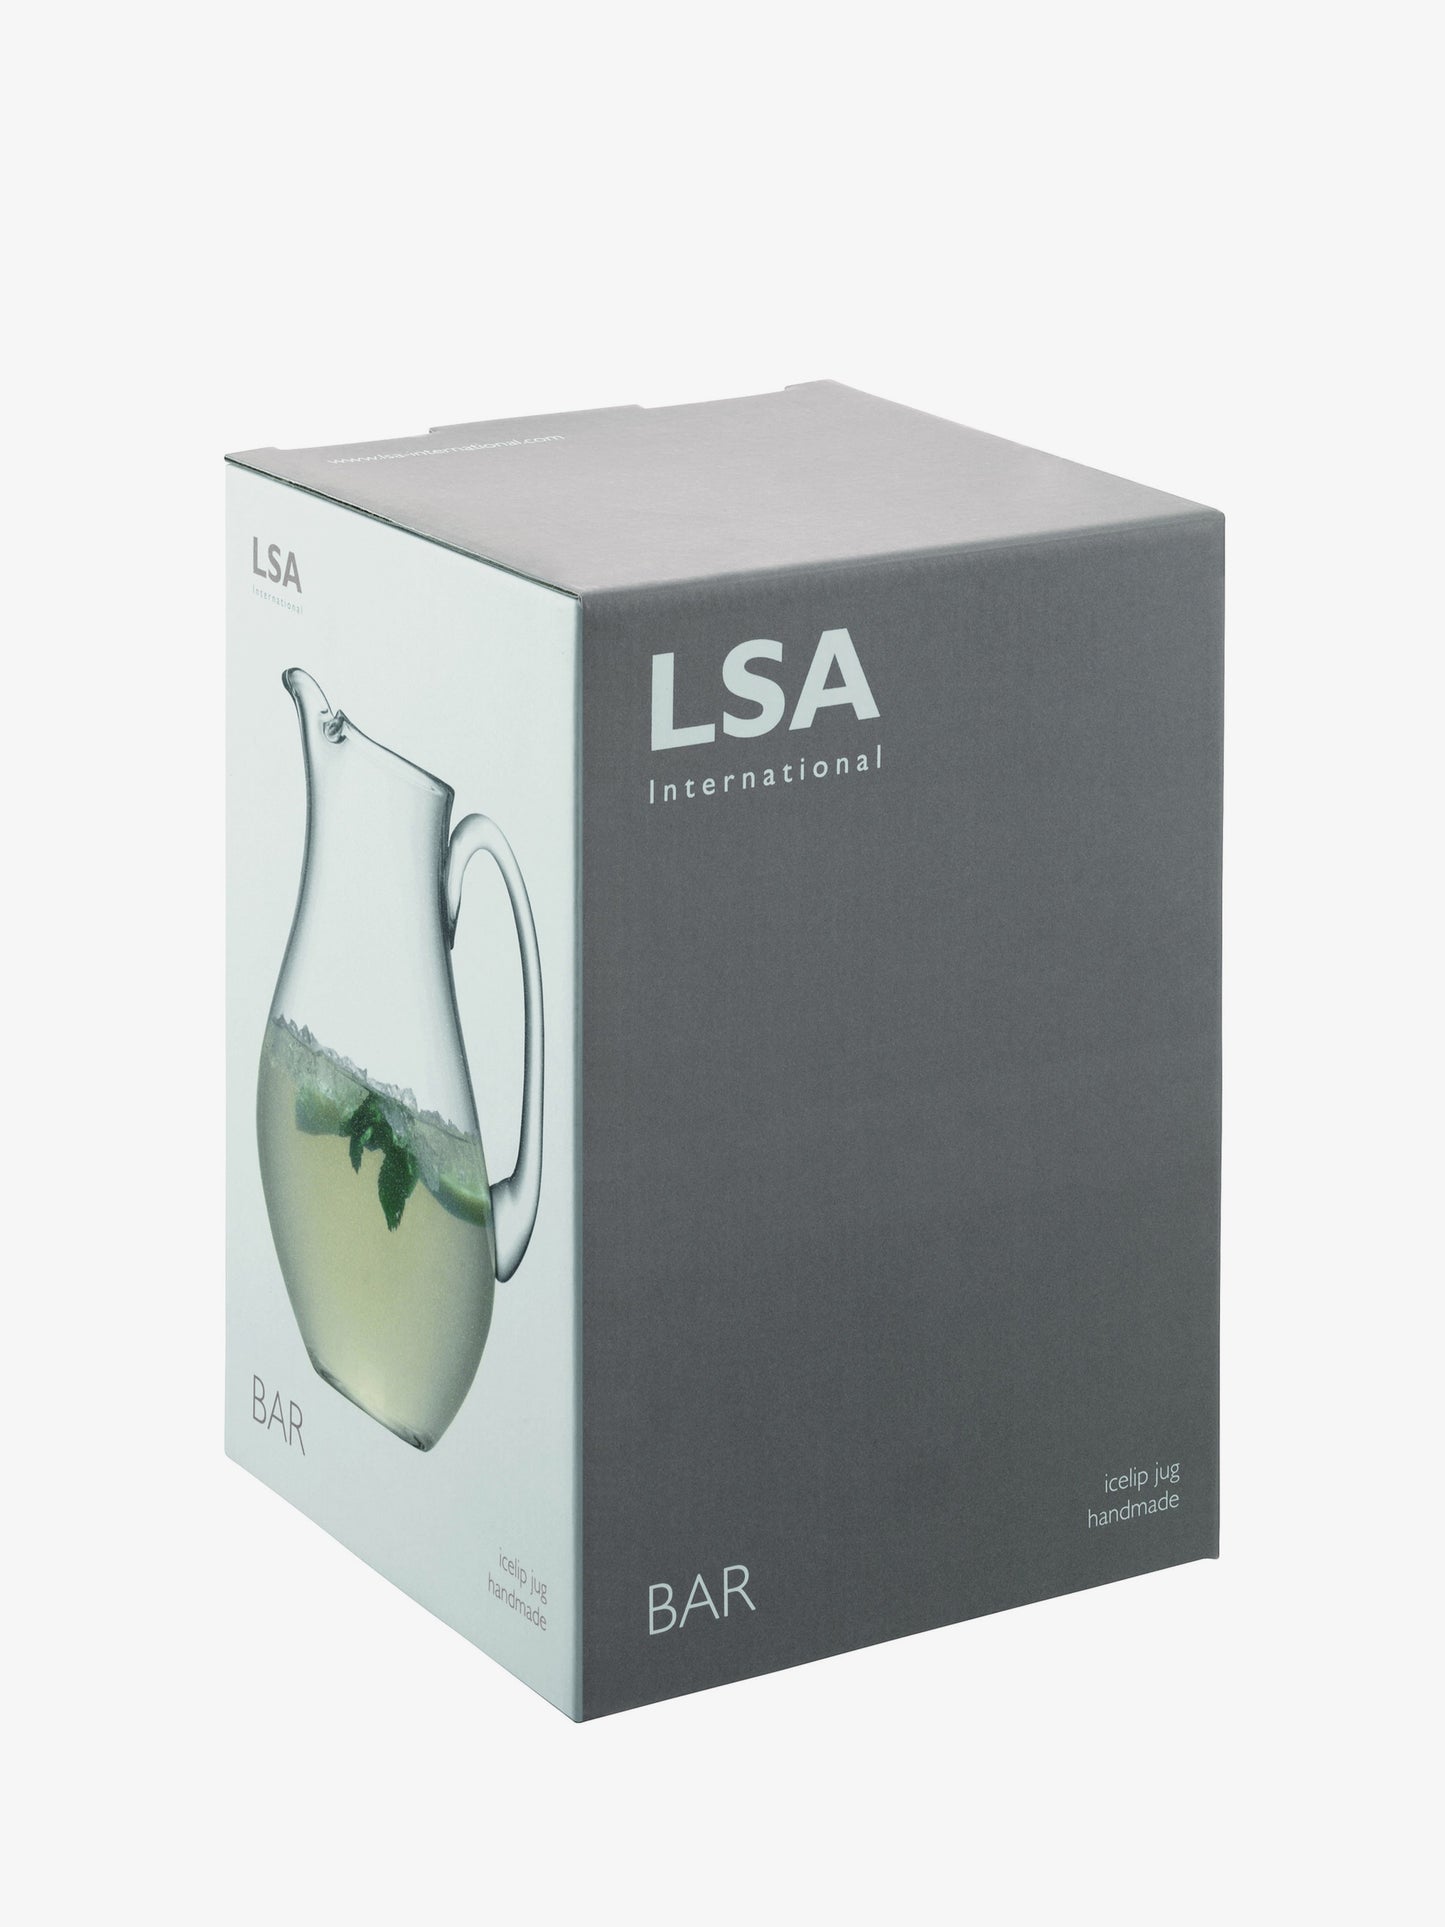 LSA Glass Bar Icelip Jug 2.65L